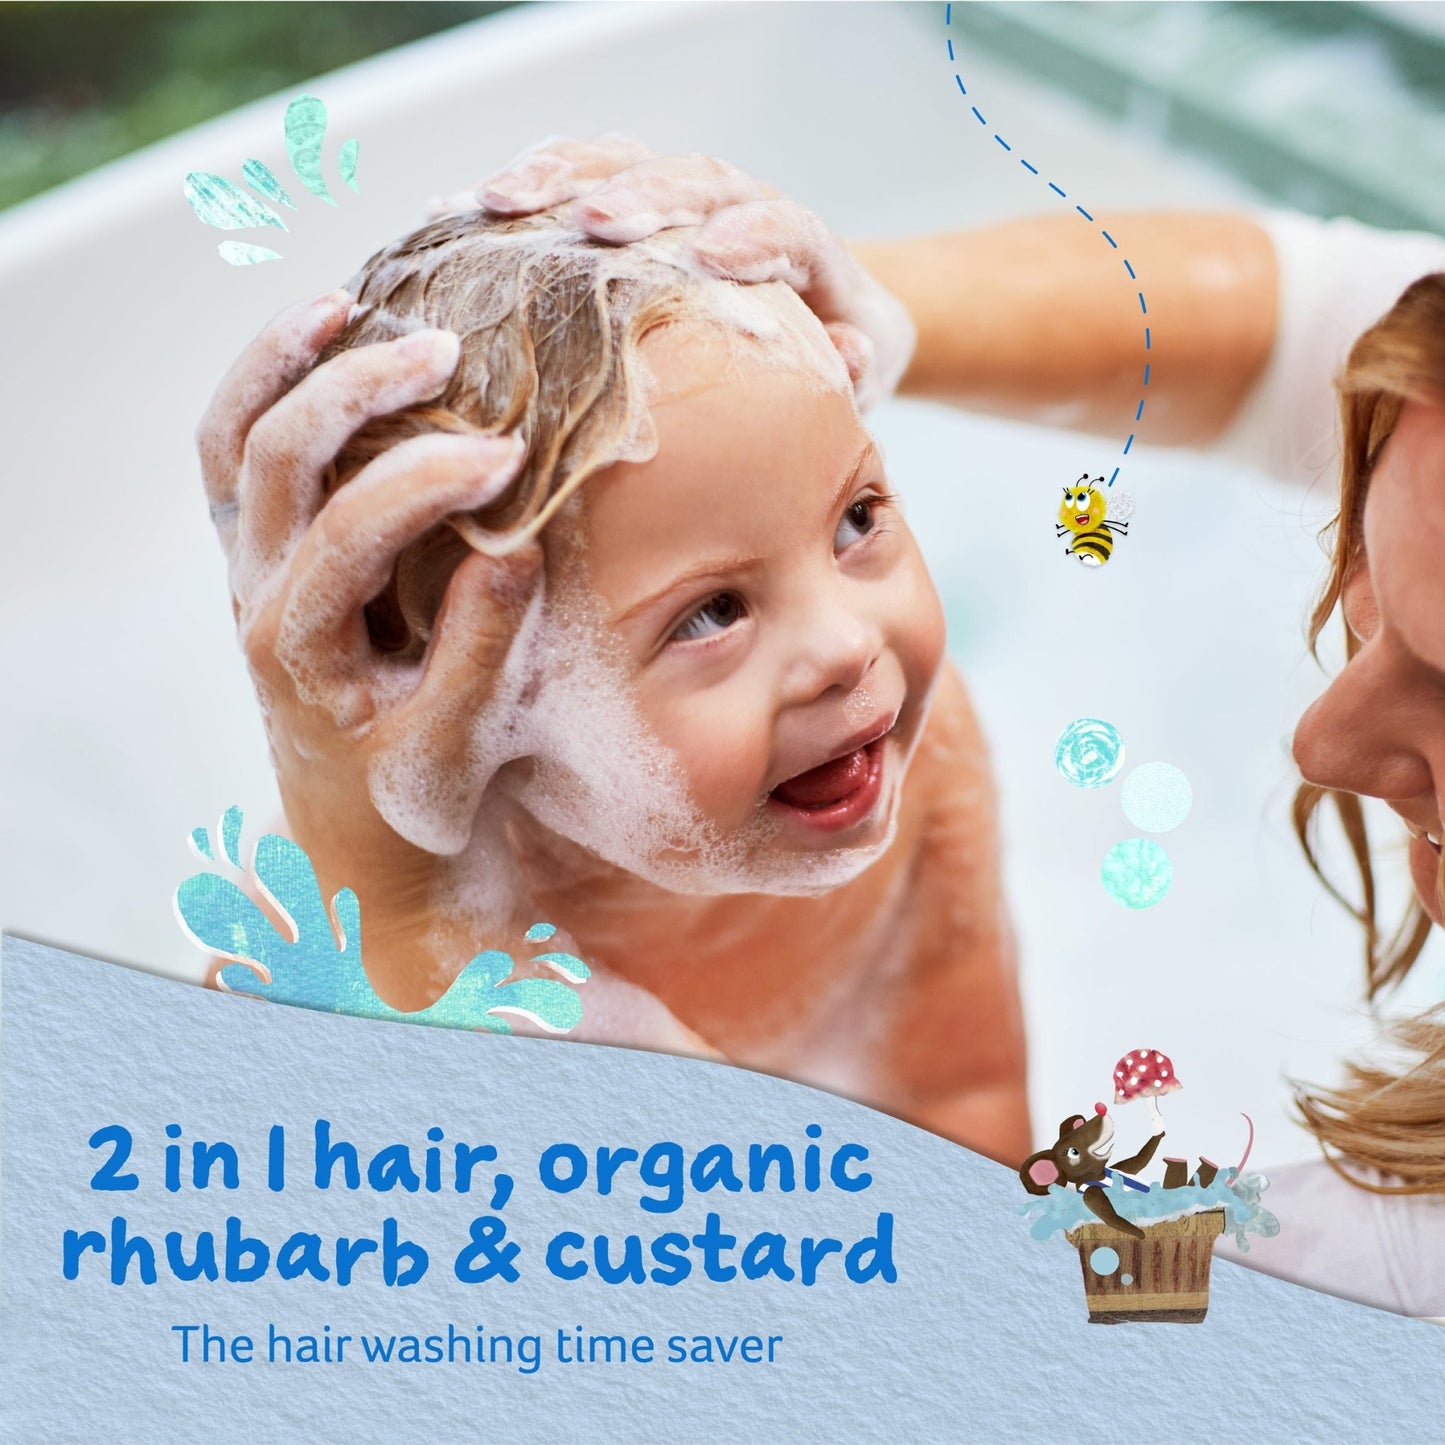 [STAFF ] 2 in 1 shampoo & conditioner organic rhubarb & custard